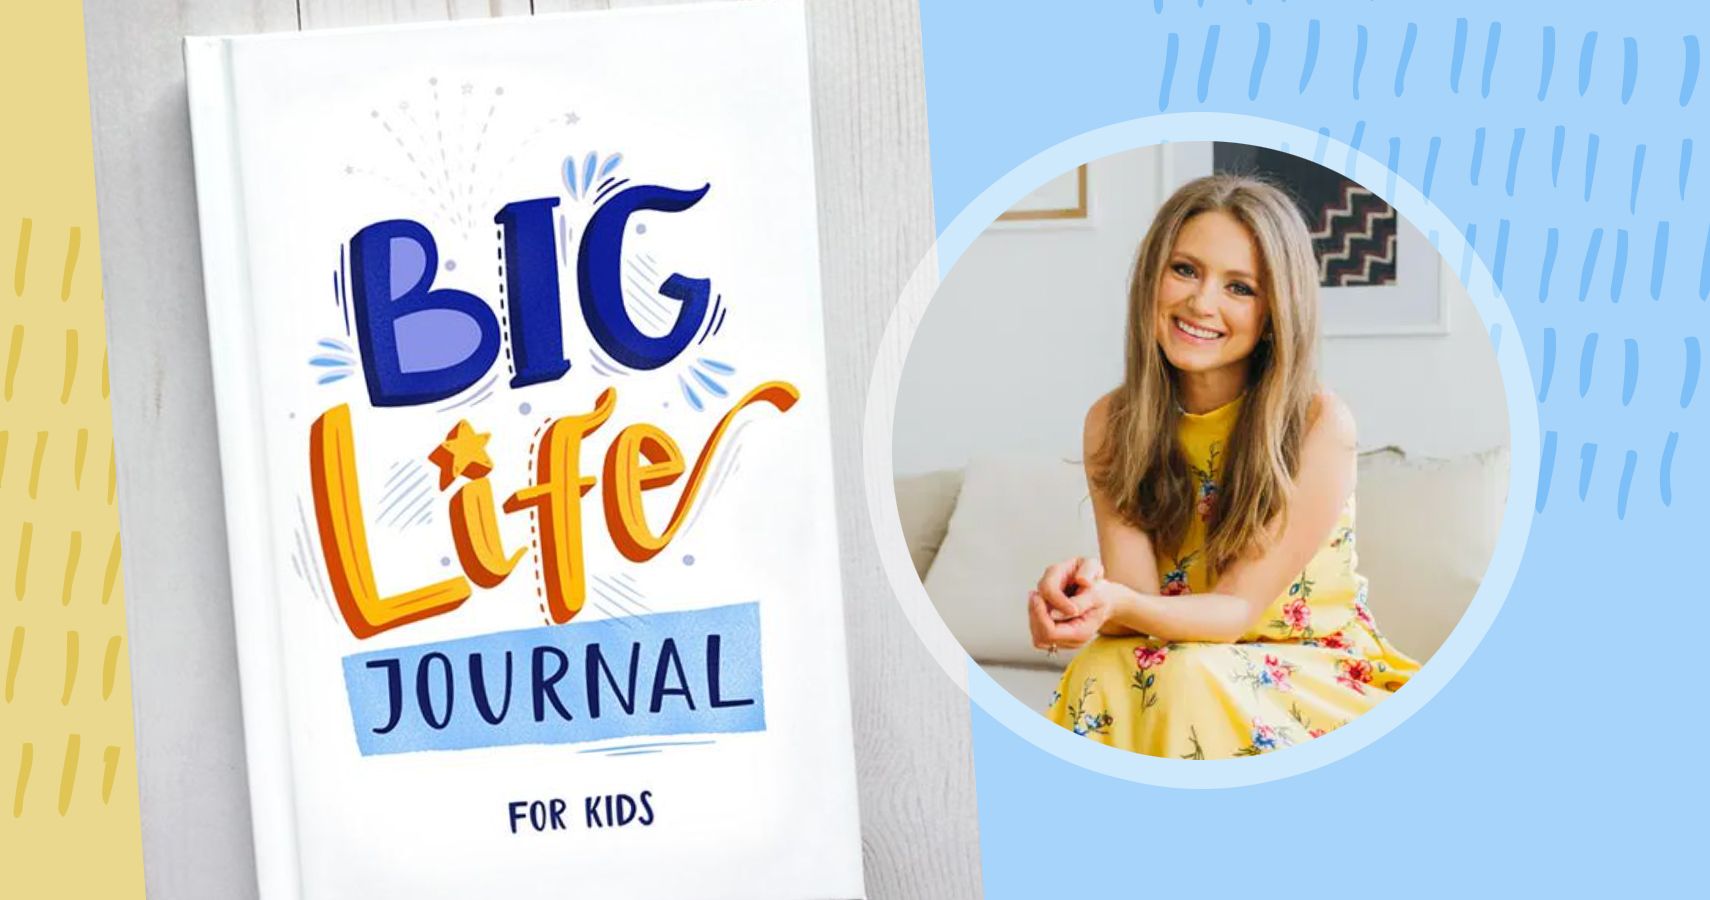 Big Life Journal: A Groundbreaking New Journal for Kids by Scott &  Alexandra — Kickstarter